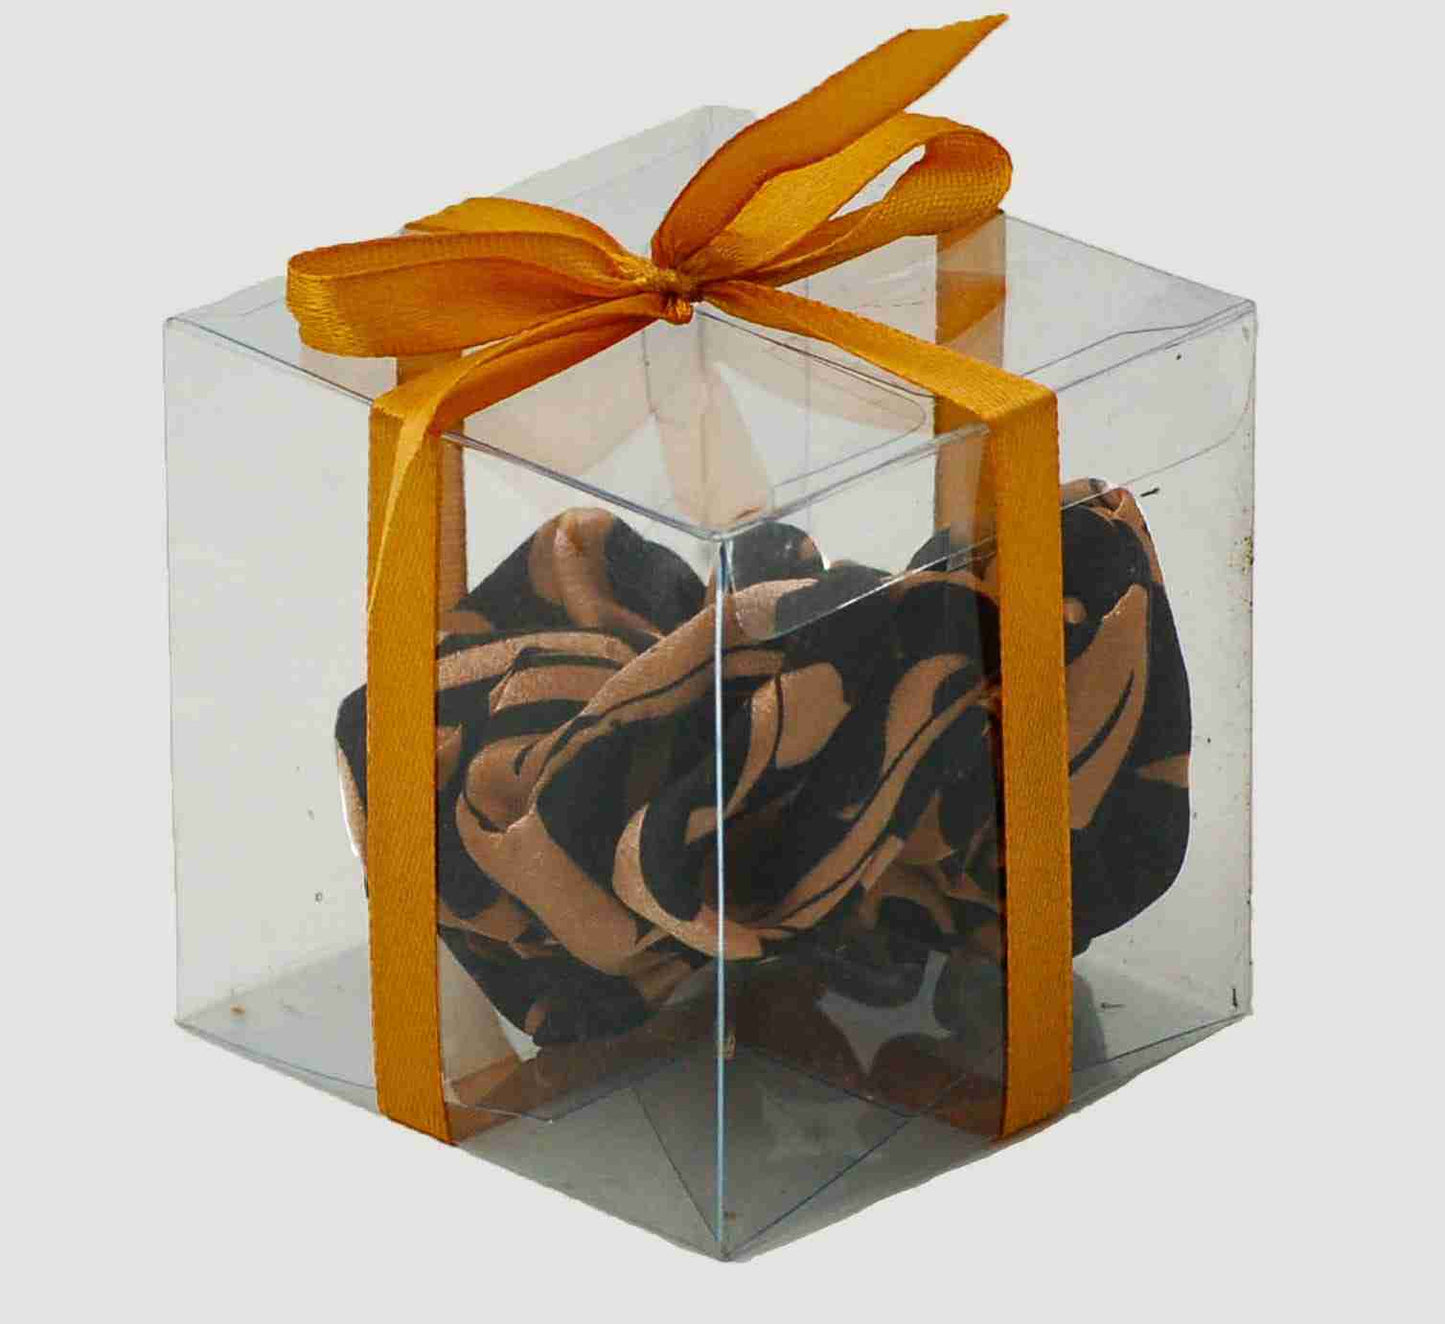 Scrunchie in Lamora Black in a Box